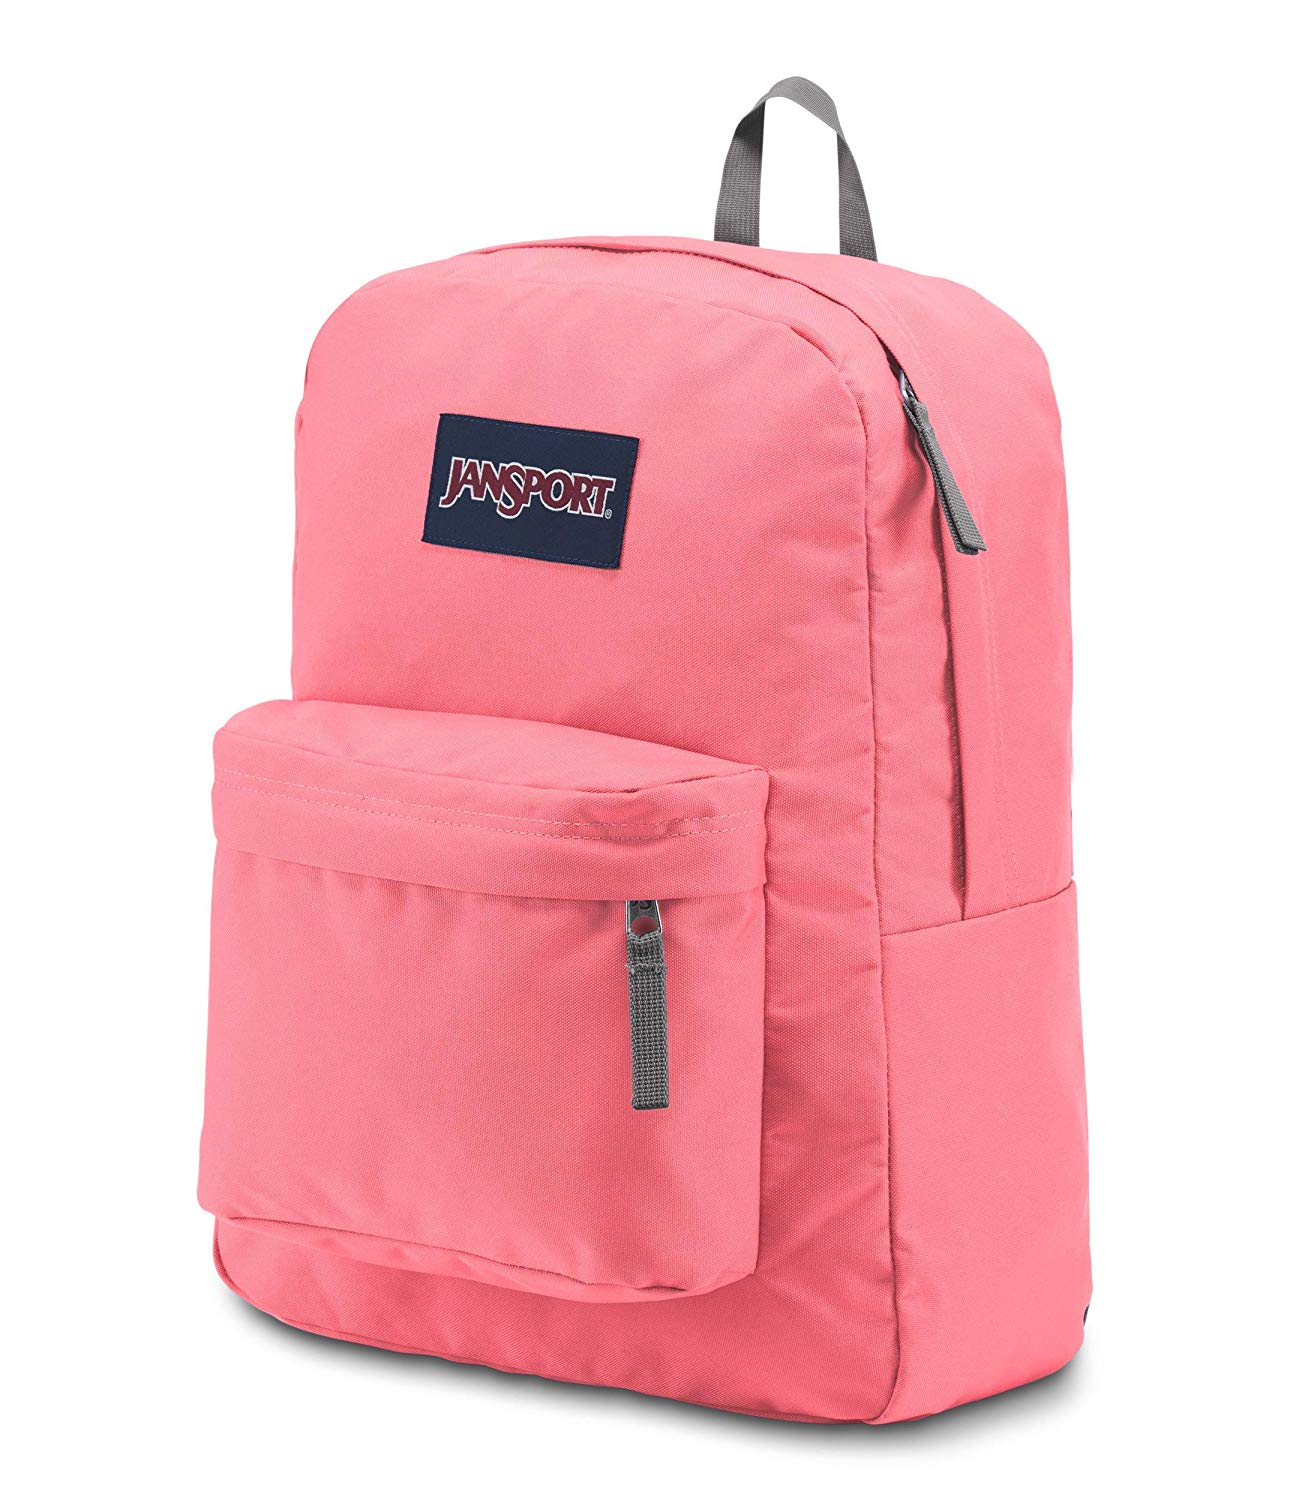 î€€JanSportî€ Superbreak î€€Backpackî€ - Lightweight School Pack, Strawberry Pink ...